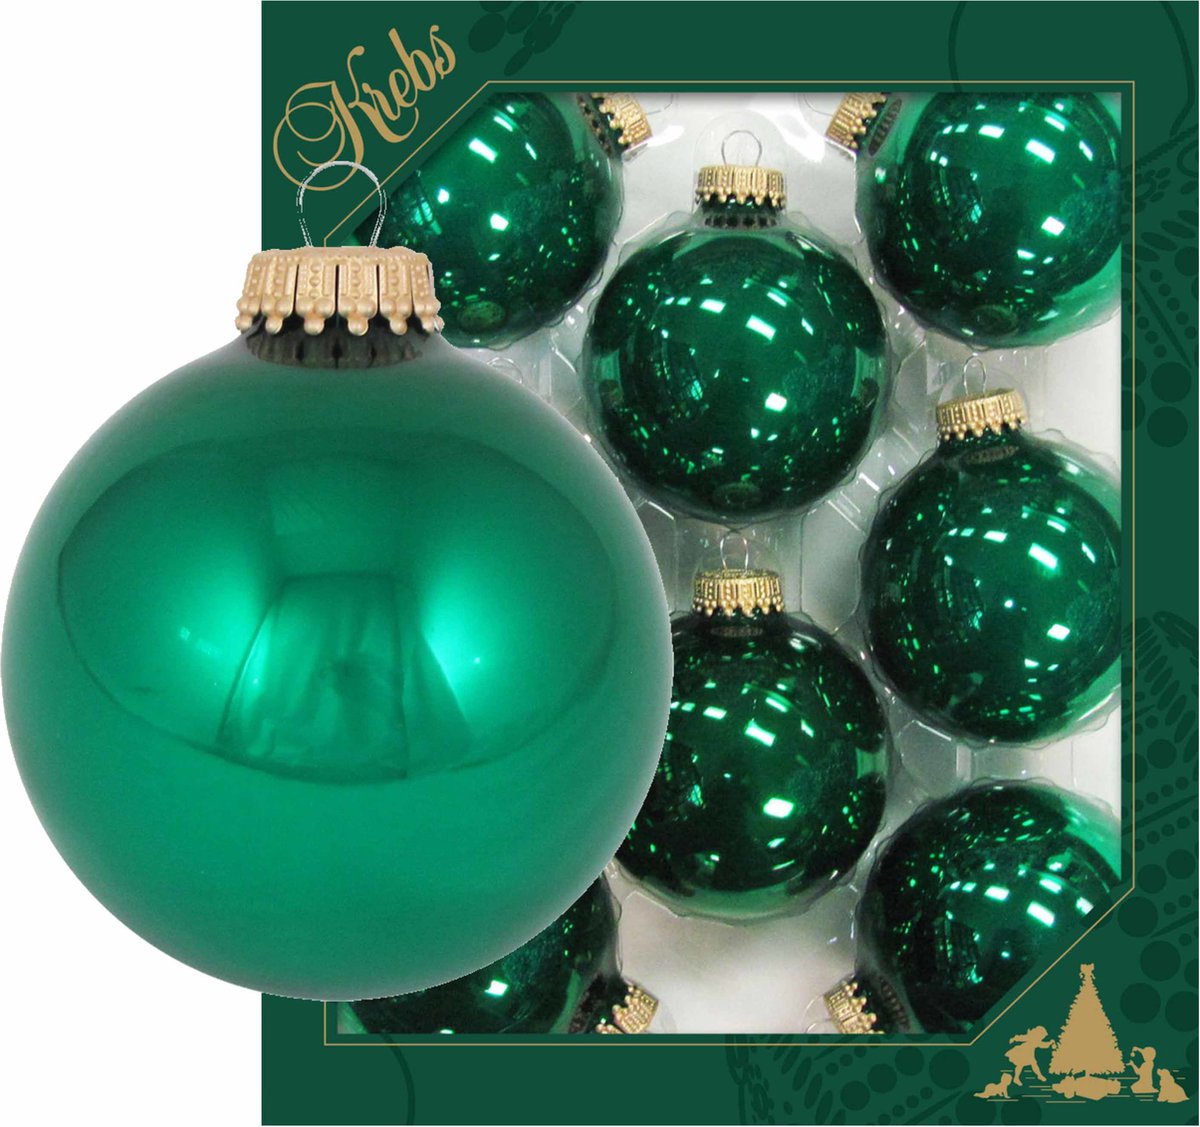 24x Emerald groene glazen kerstballen glans 7 cm kerstboomversiering - Kerstversiering/kerstdecoratie groen